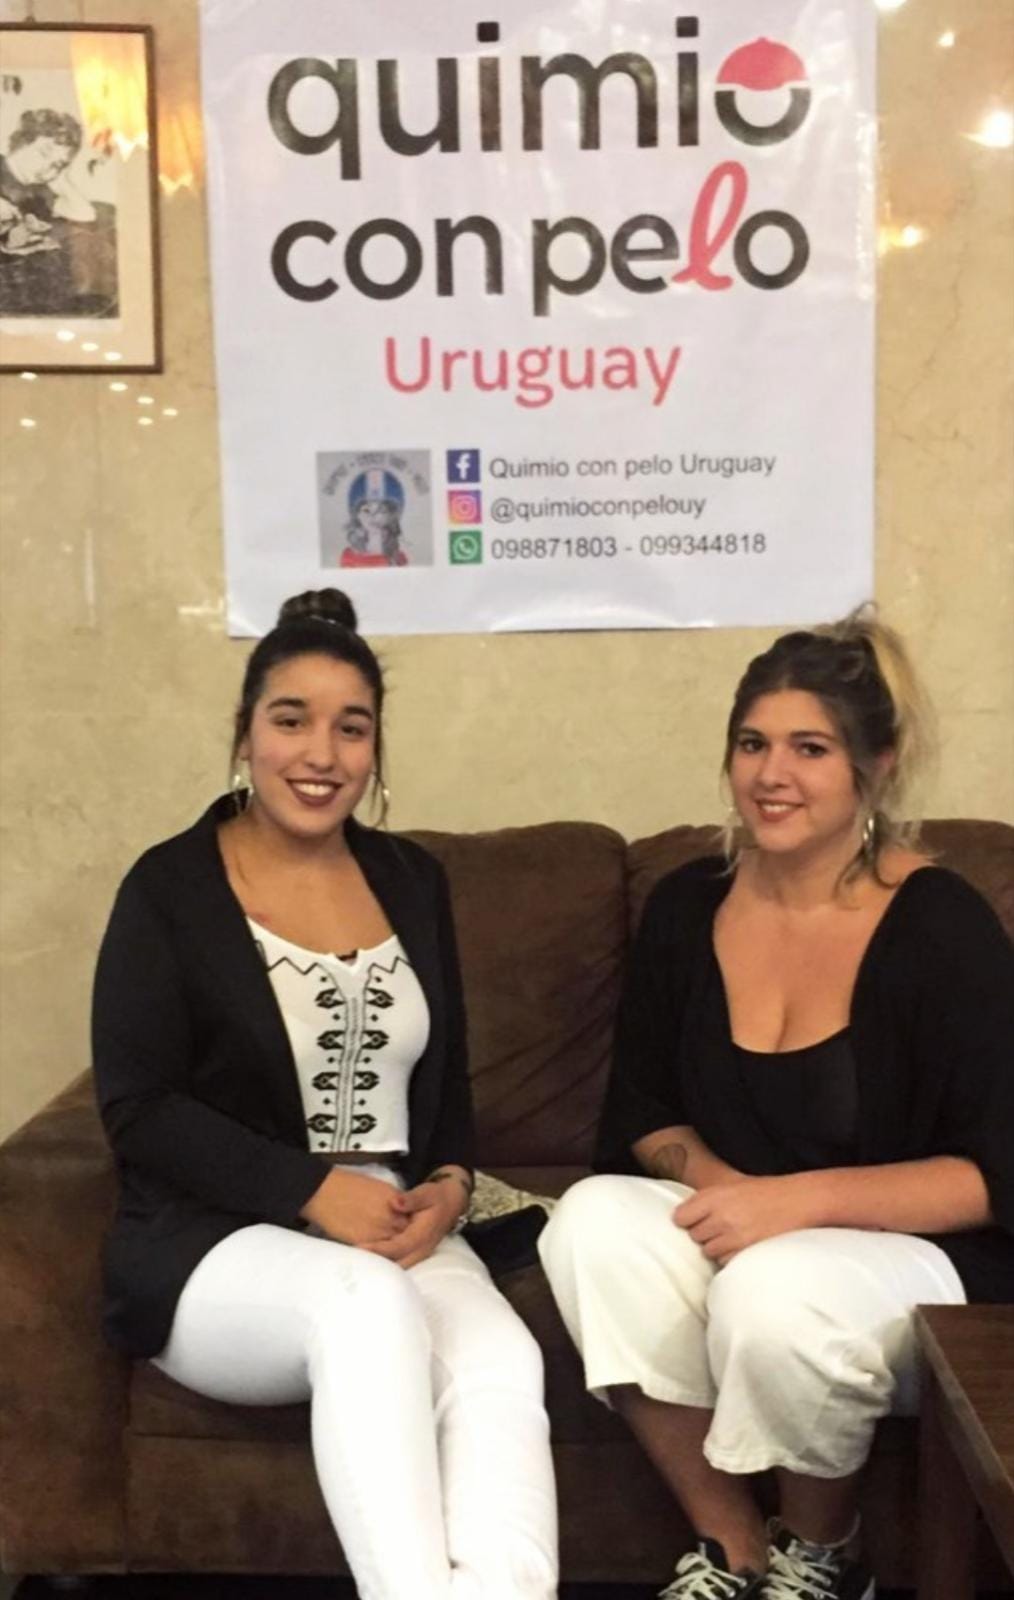 Camila Taño y Evangelina Pírez, de Quimio con pelo, Uruguay